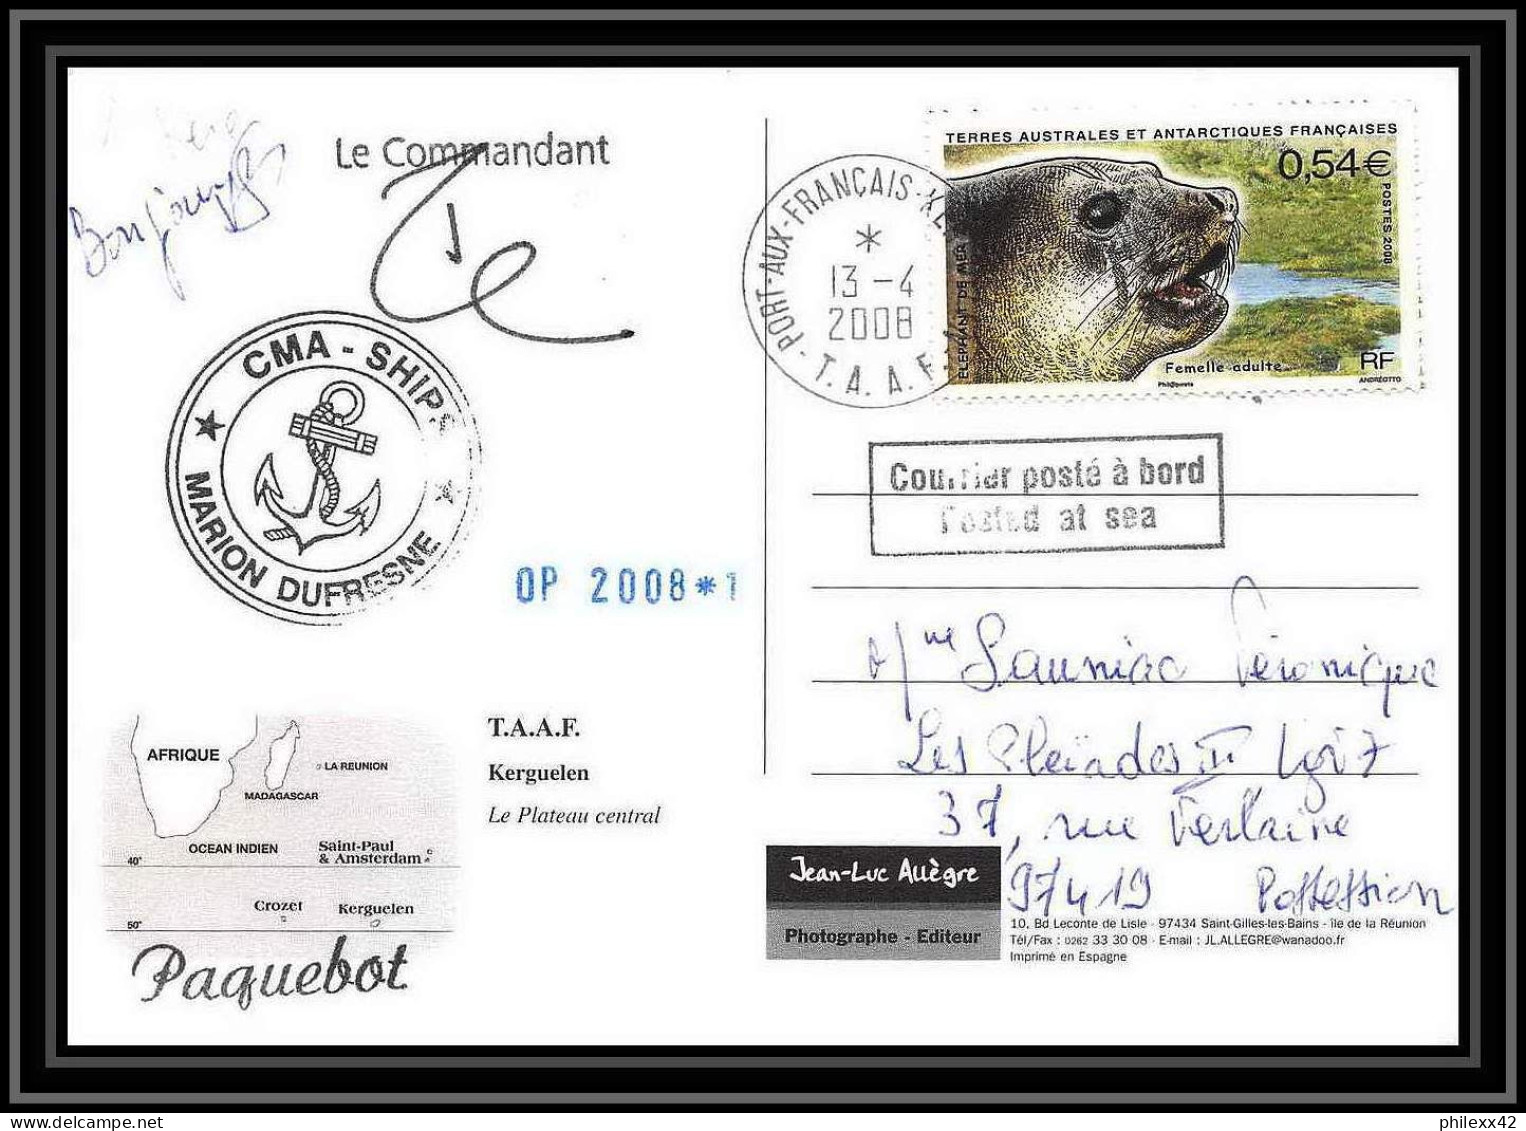 2794 ANTARCTIC Terres Australes (taaf)-carte Postale Dufresne 2 Signé Signed Op 2008/1 Kerguelen N°508 Sea Elephant - Briefe U. Dokumente